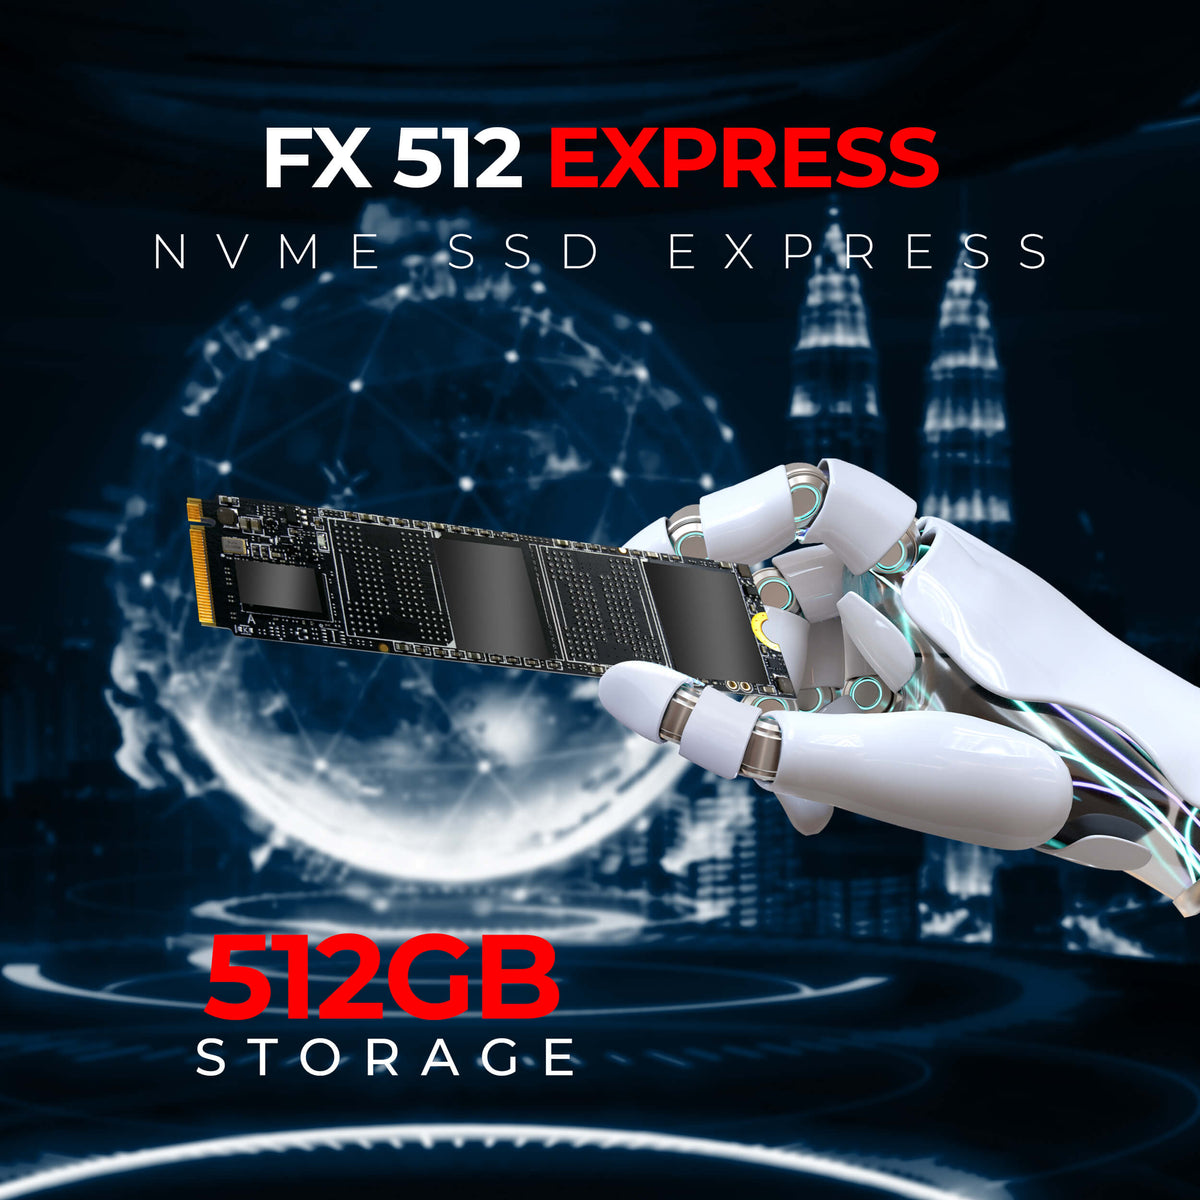 FX 512 EXPRESS NVME SSD